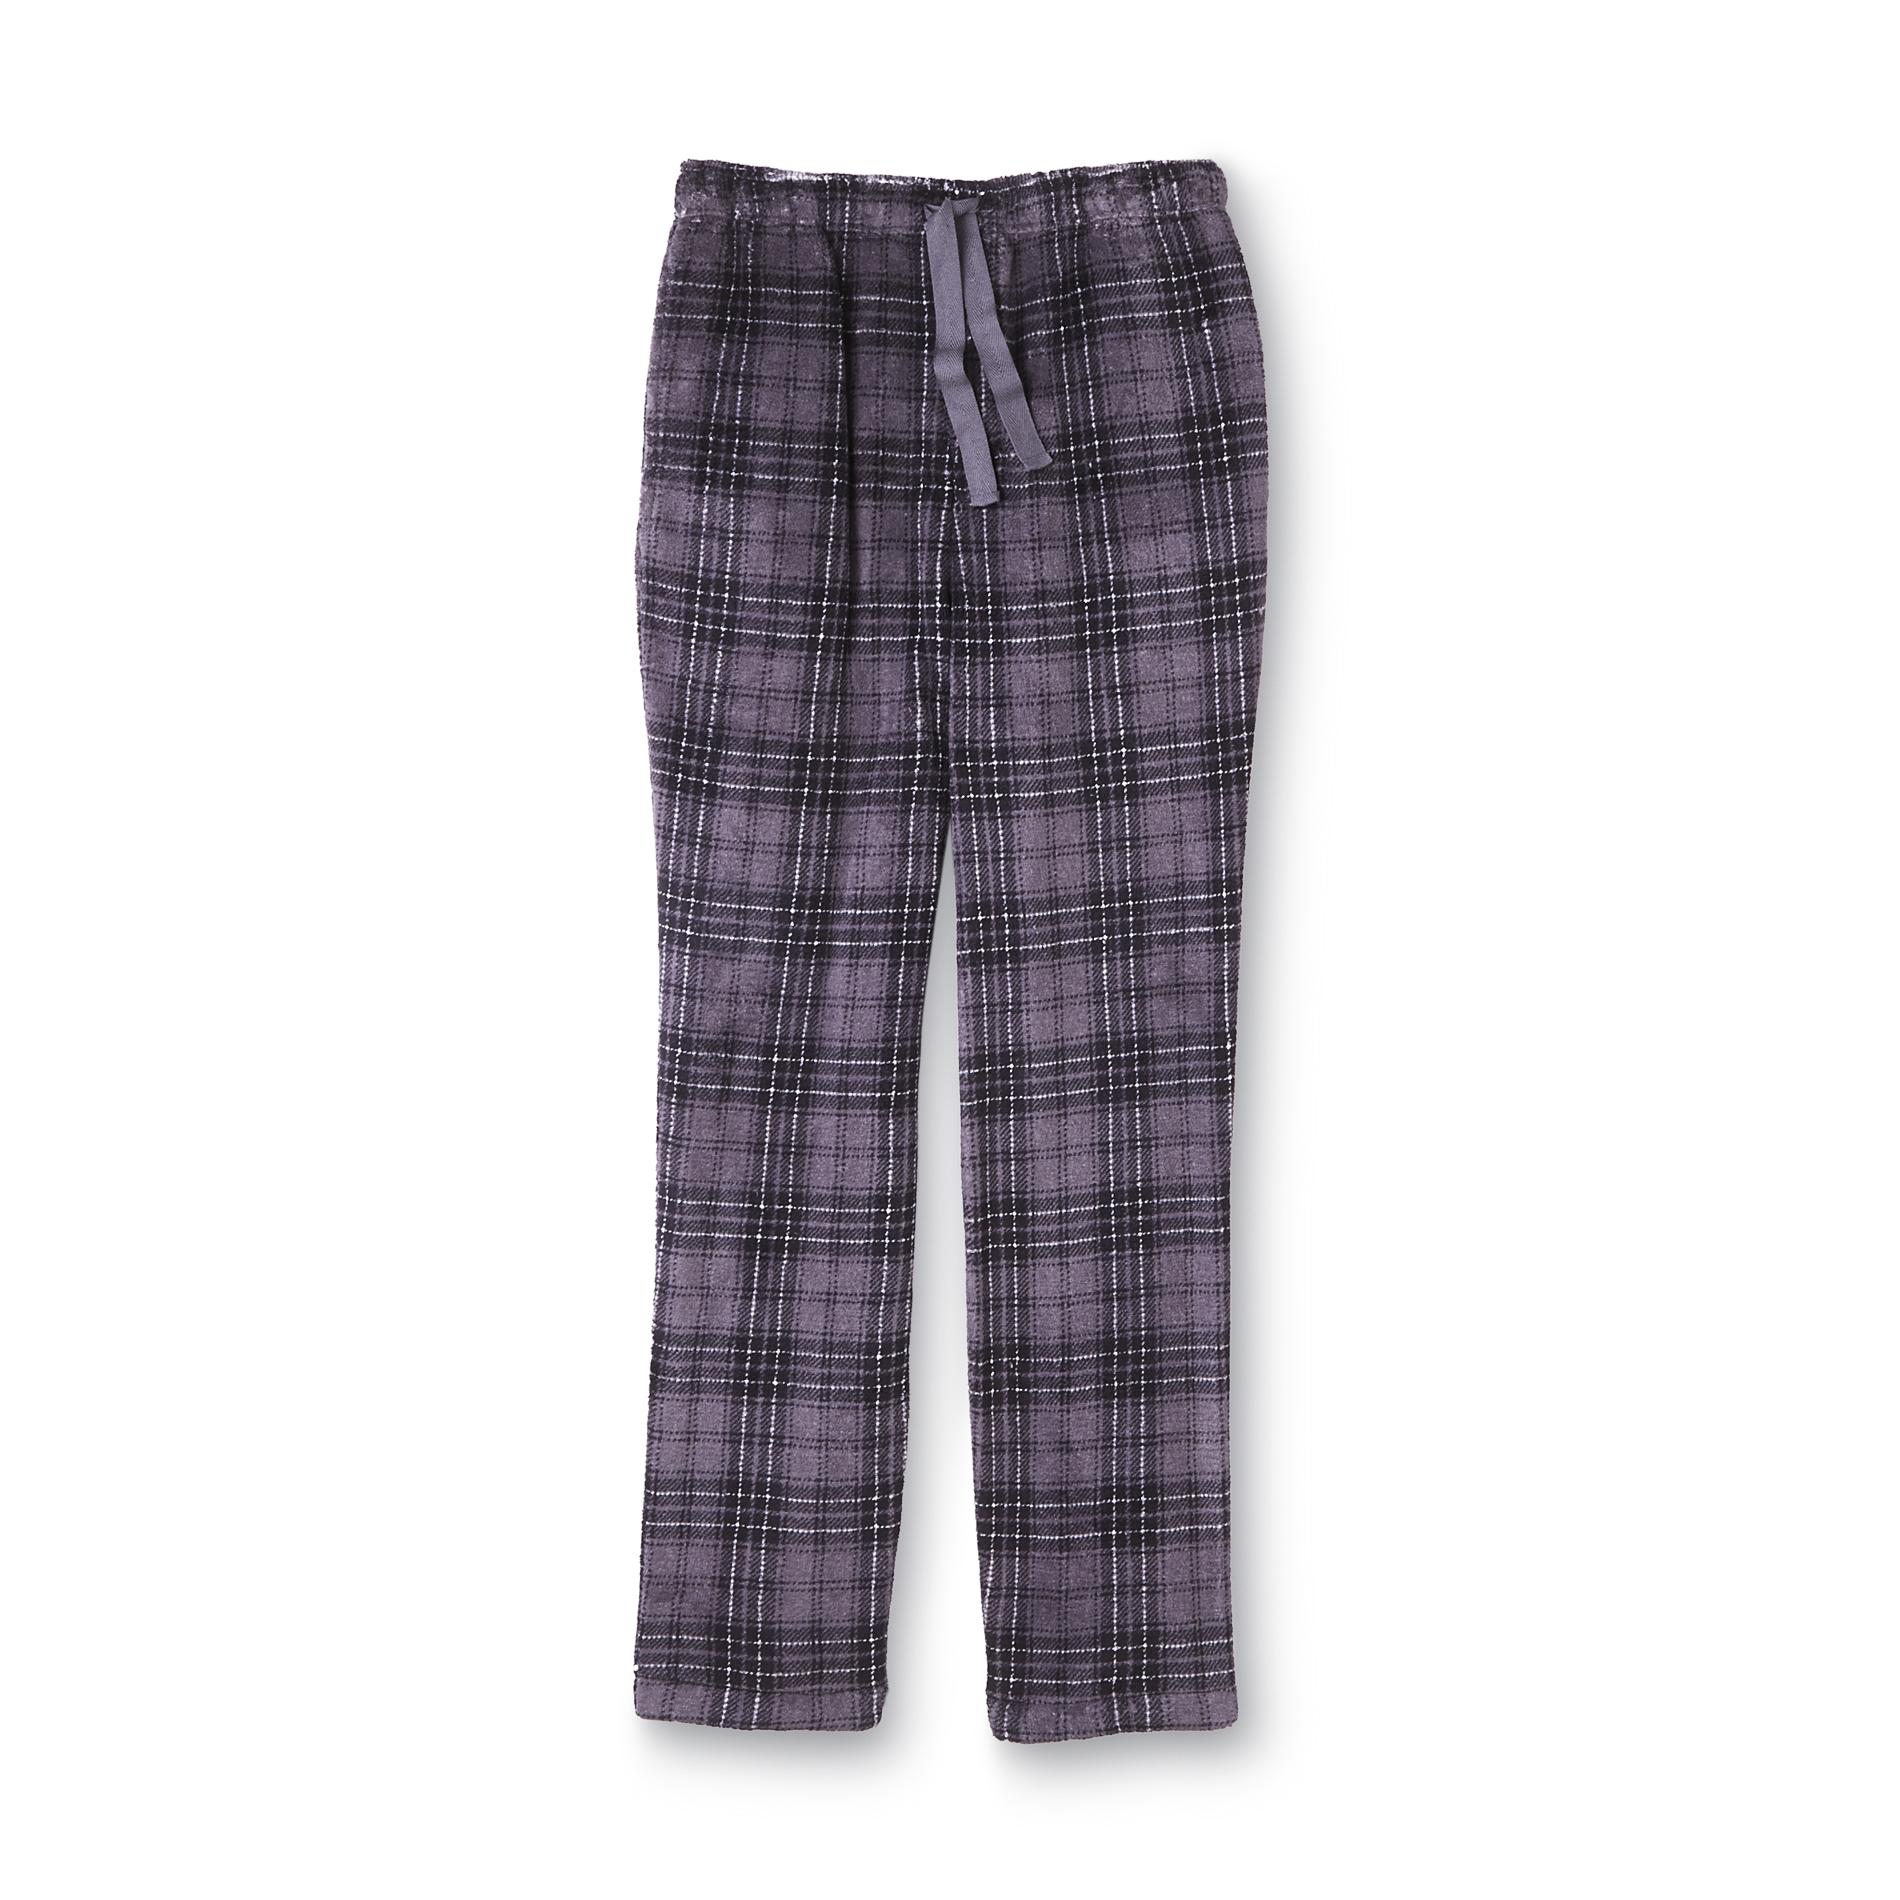 Joe Boxer Men's Plush Pajama Pants - Plaid